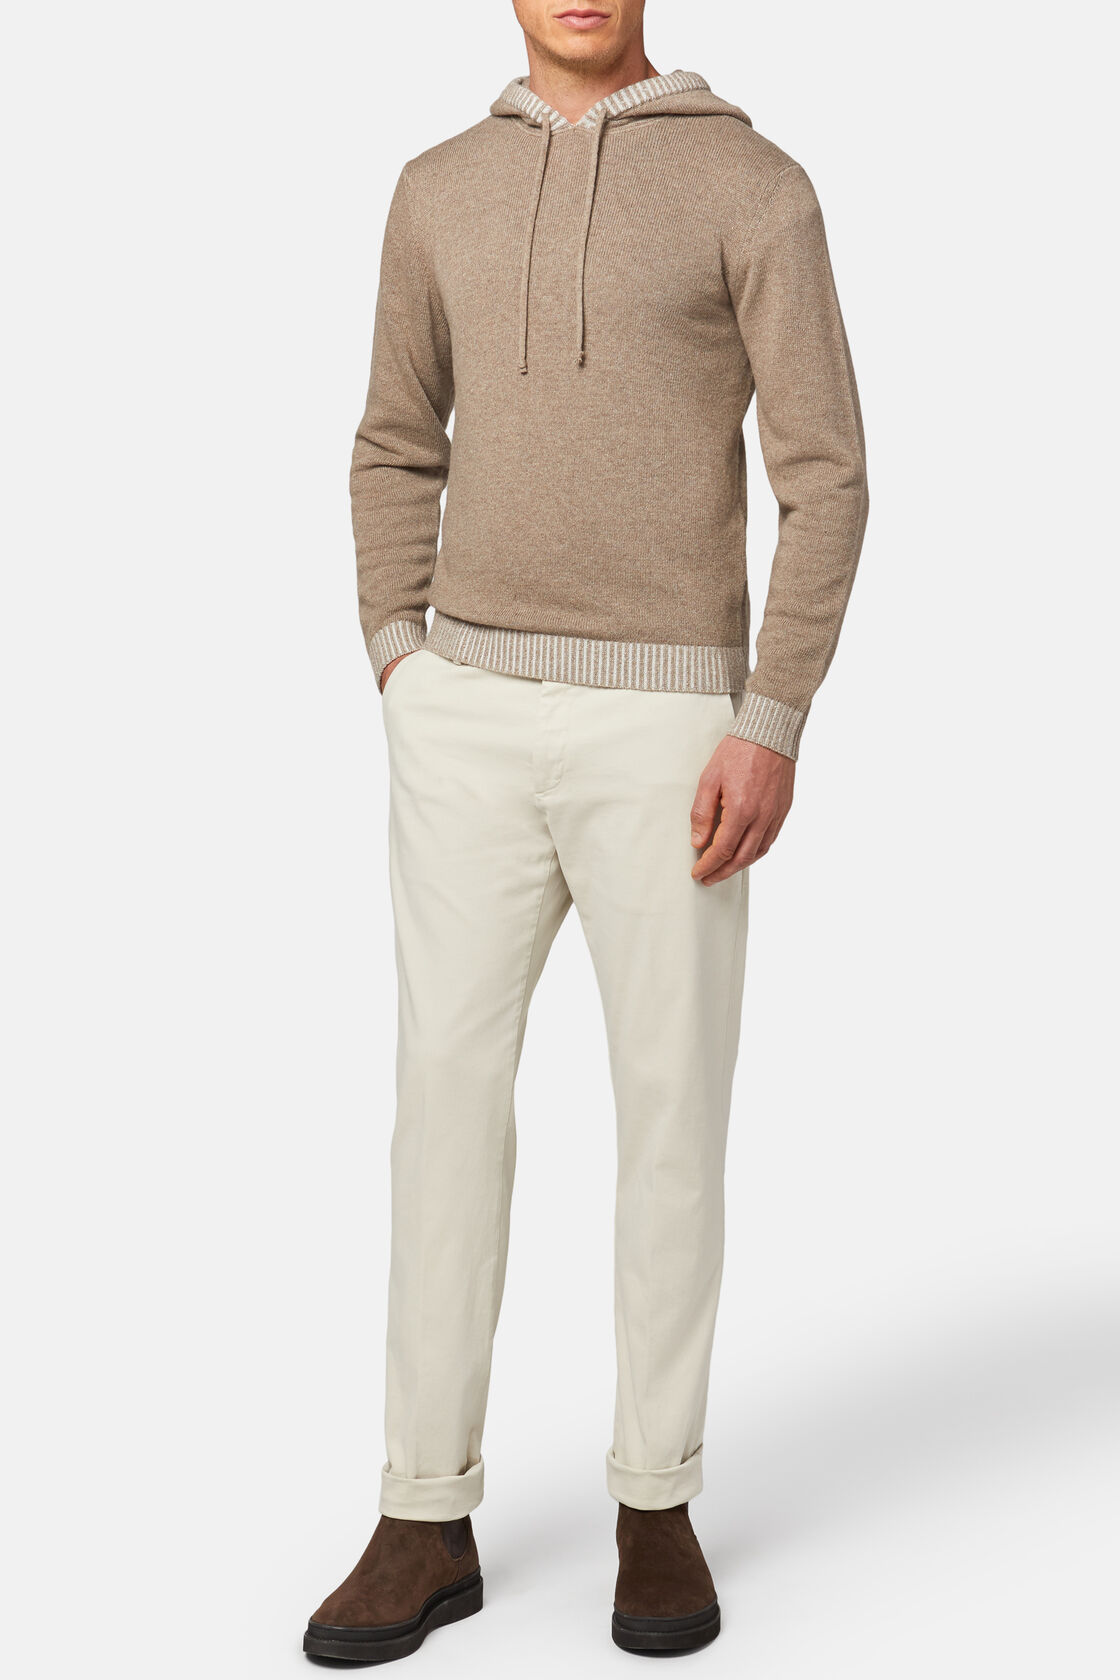 Dove grey cashmere blend hooded jumper, , hi-res